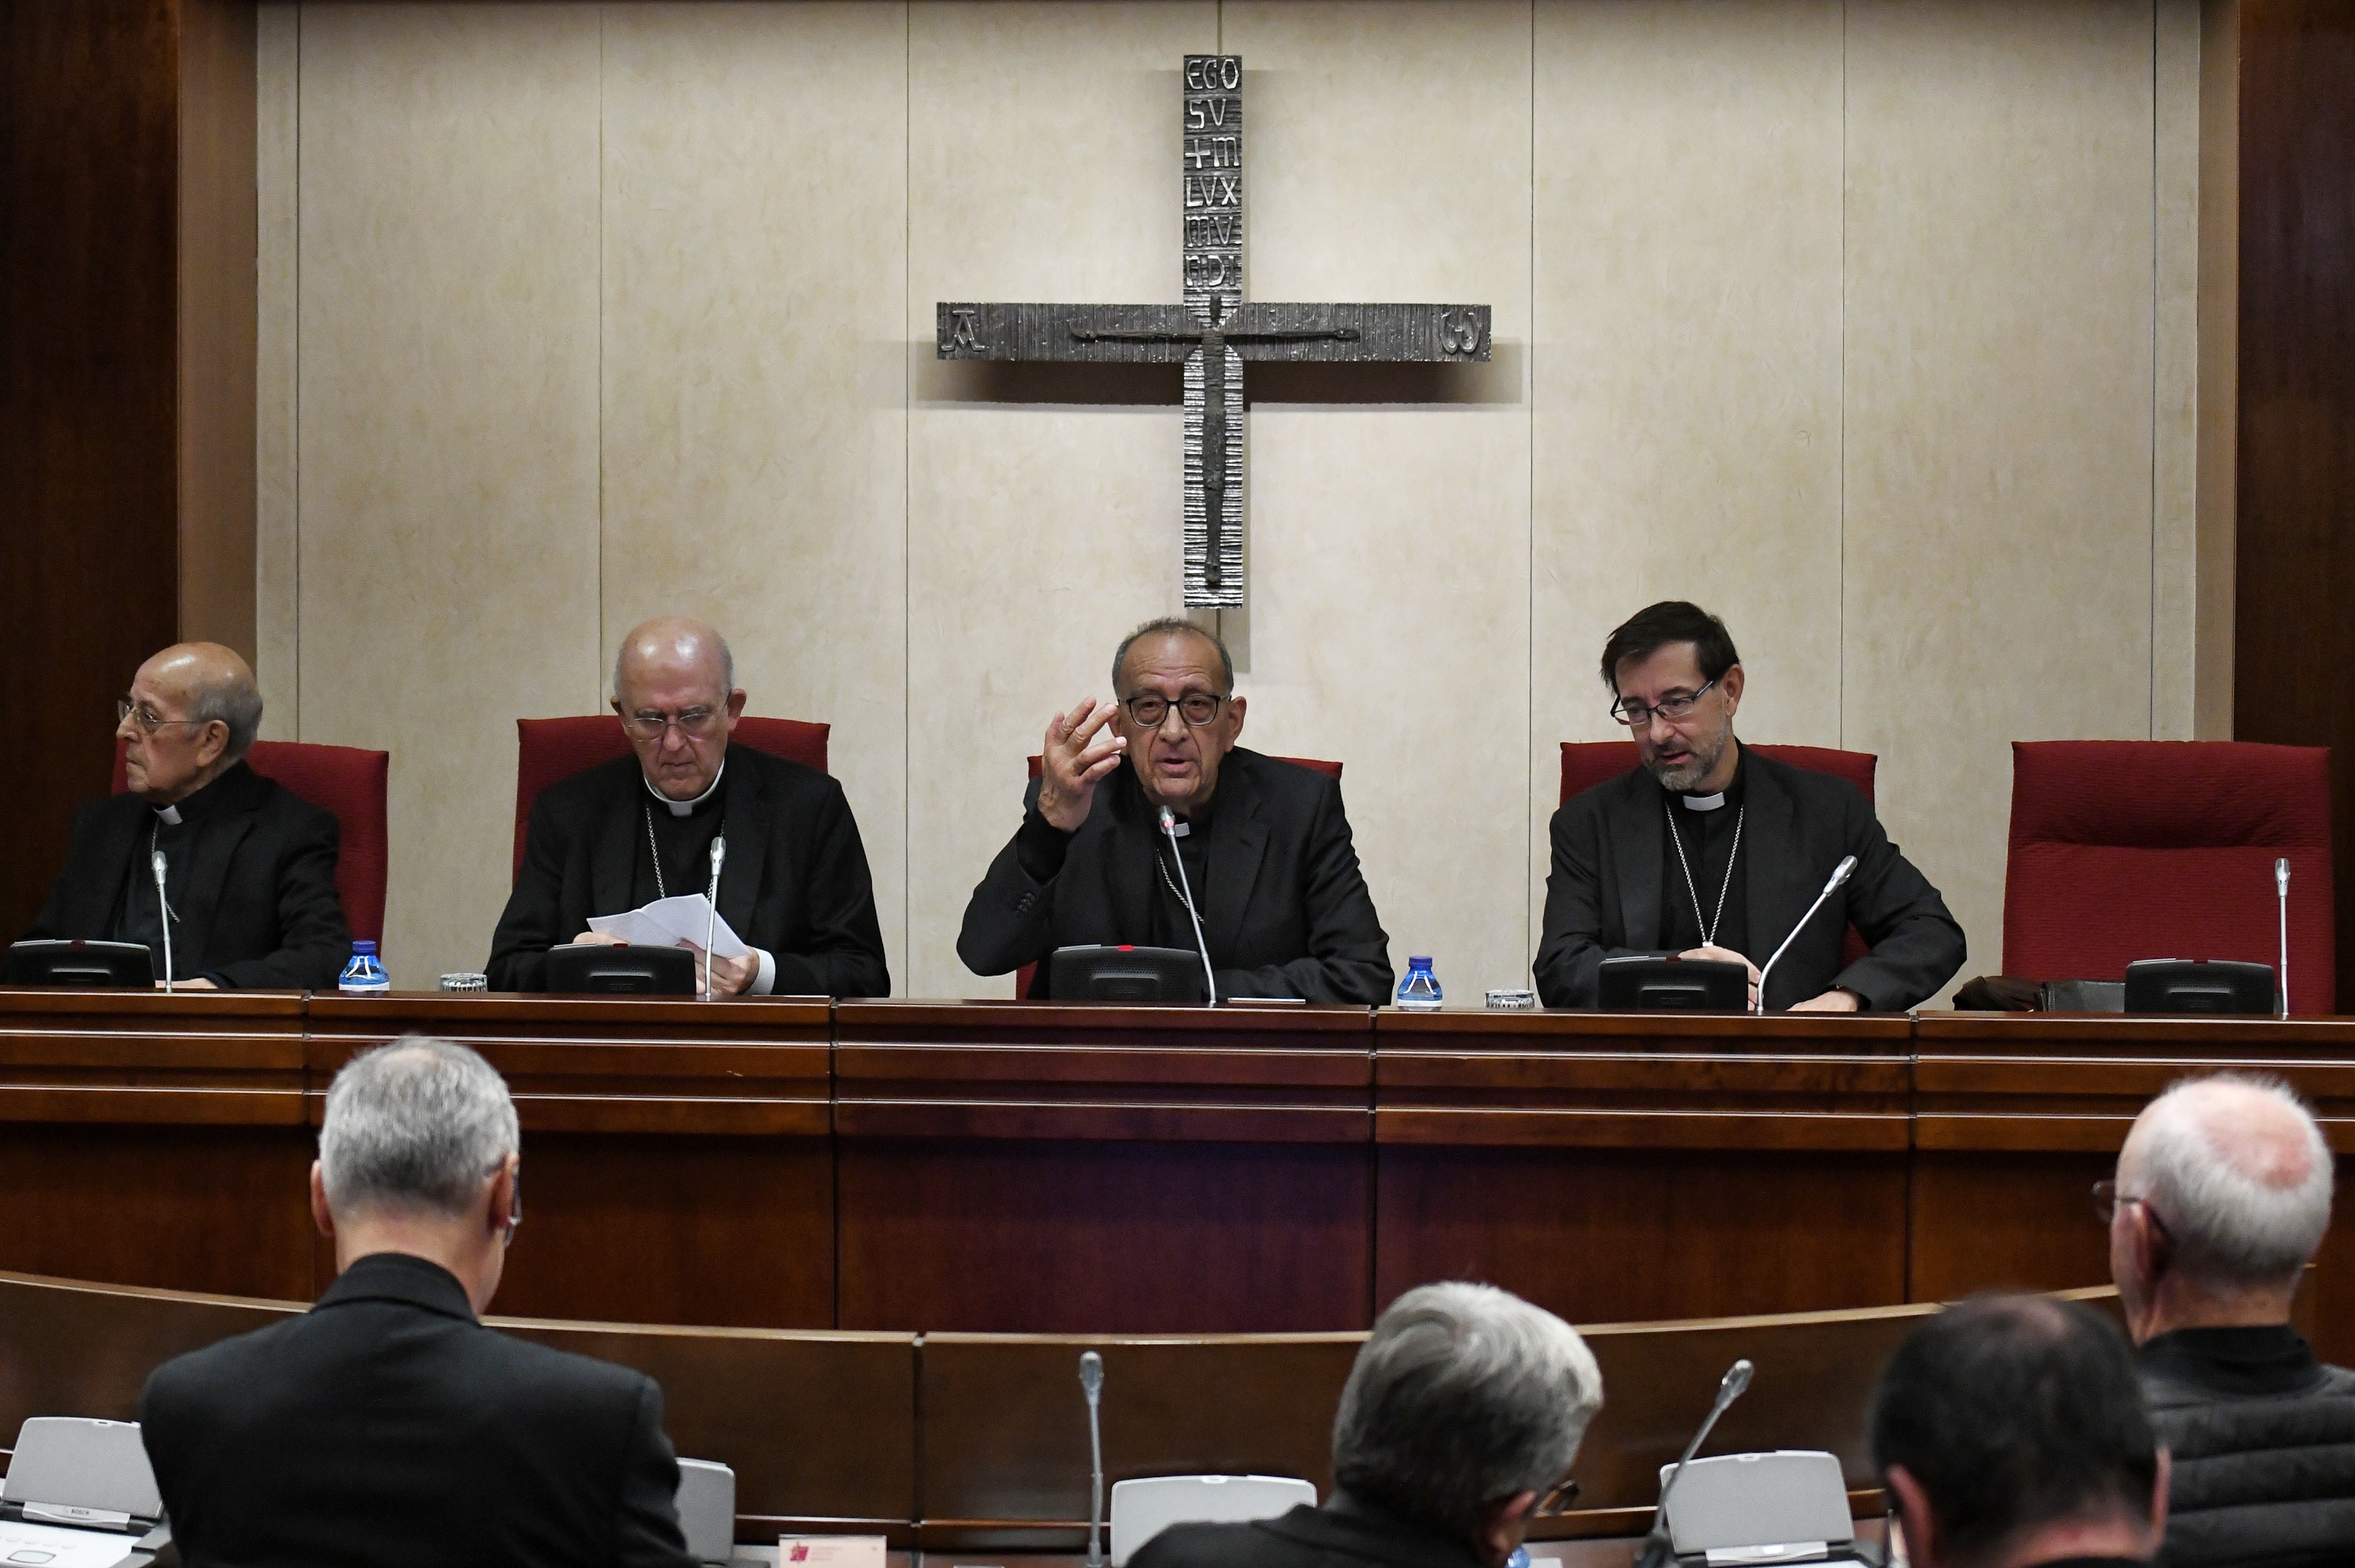 Els bisbes discrepen amb les dades d'abusos del Defensor del Poble: "No correspon a la veritat"